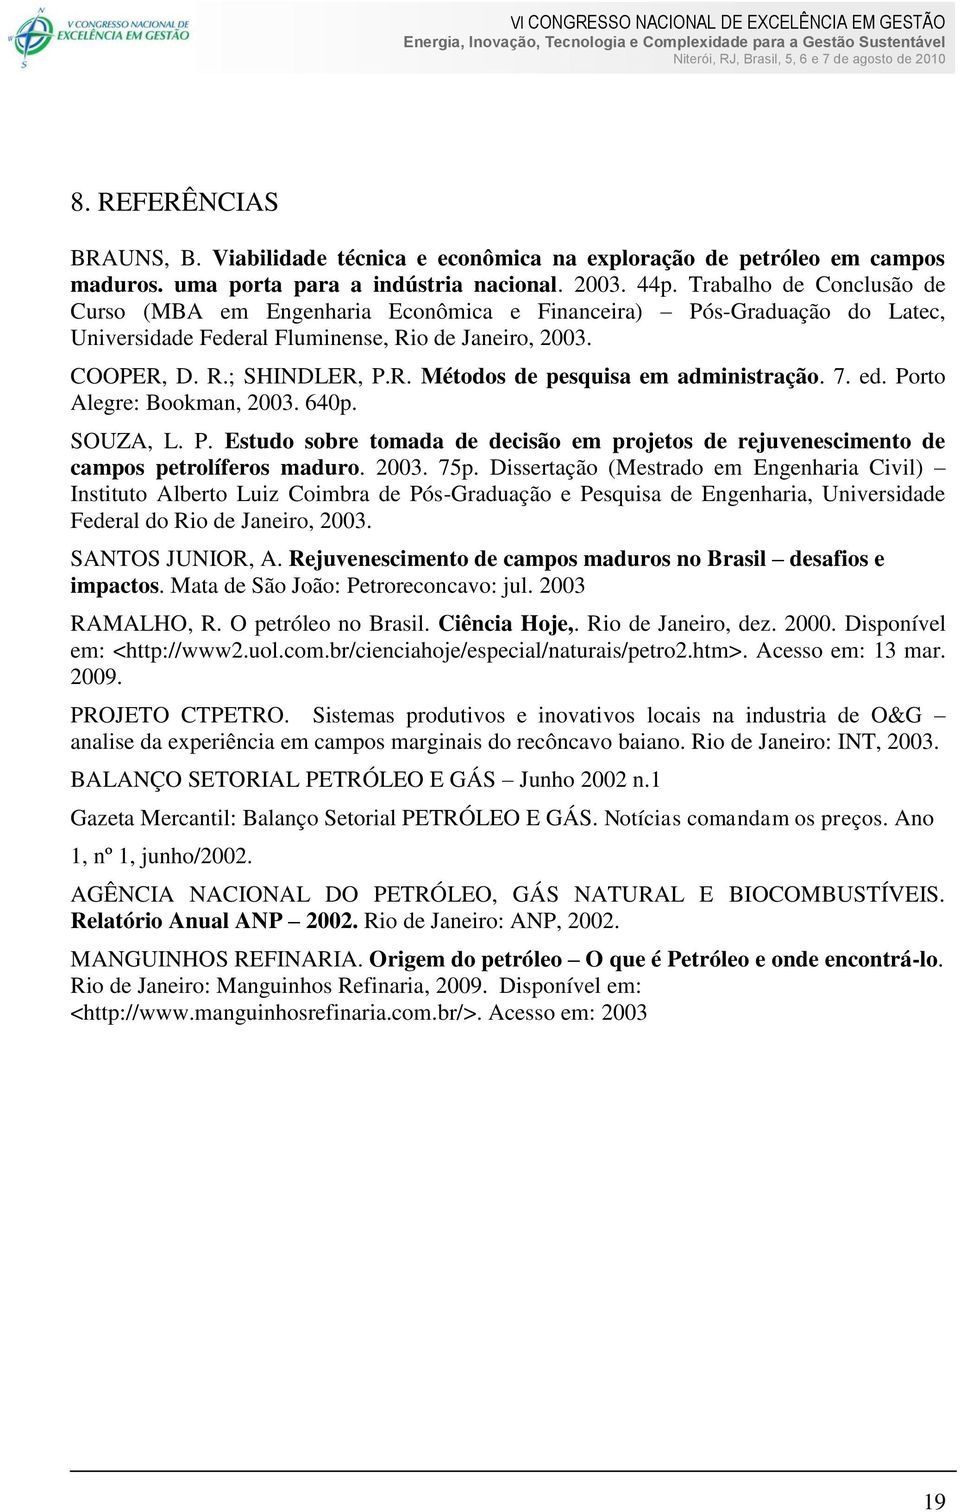 7. ed. Porto Alegre: Bookman, 2003. 640p. SOUZA, L. P. Estudo sobre tomada de decisão em projetos de rejuvenescimento de campos petrolíferos maduro. 2003. 75p.